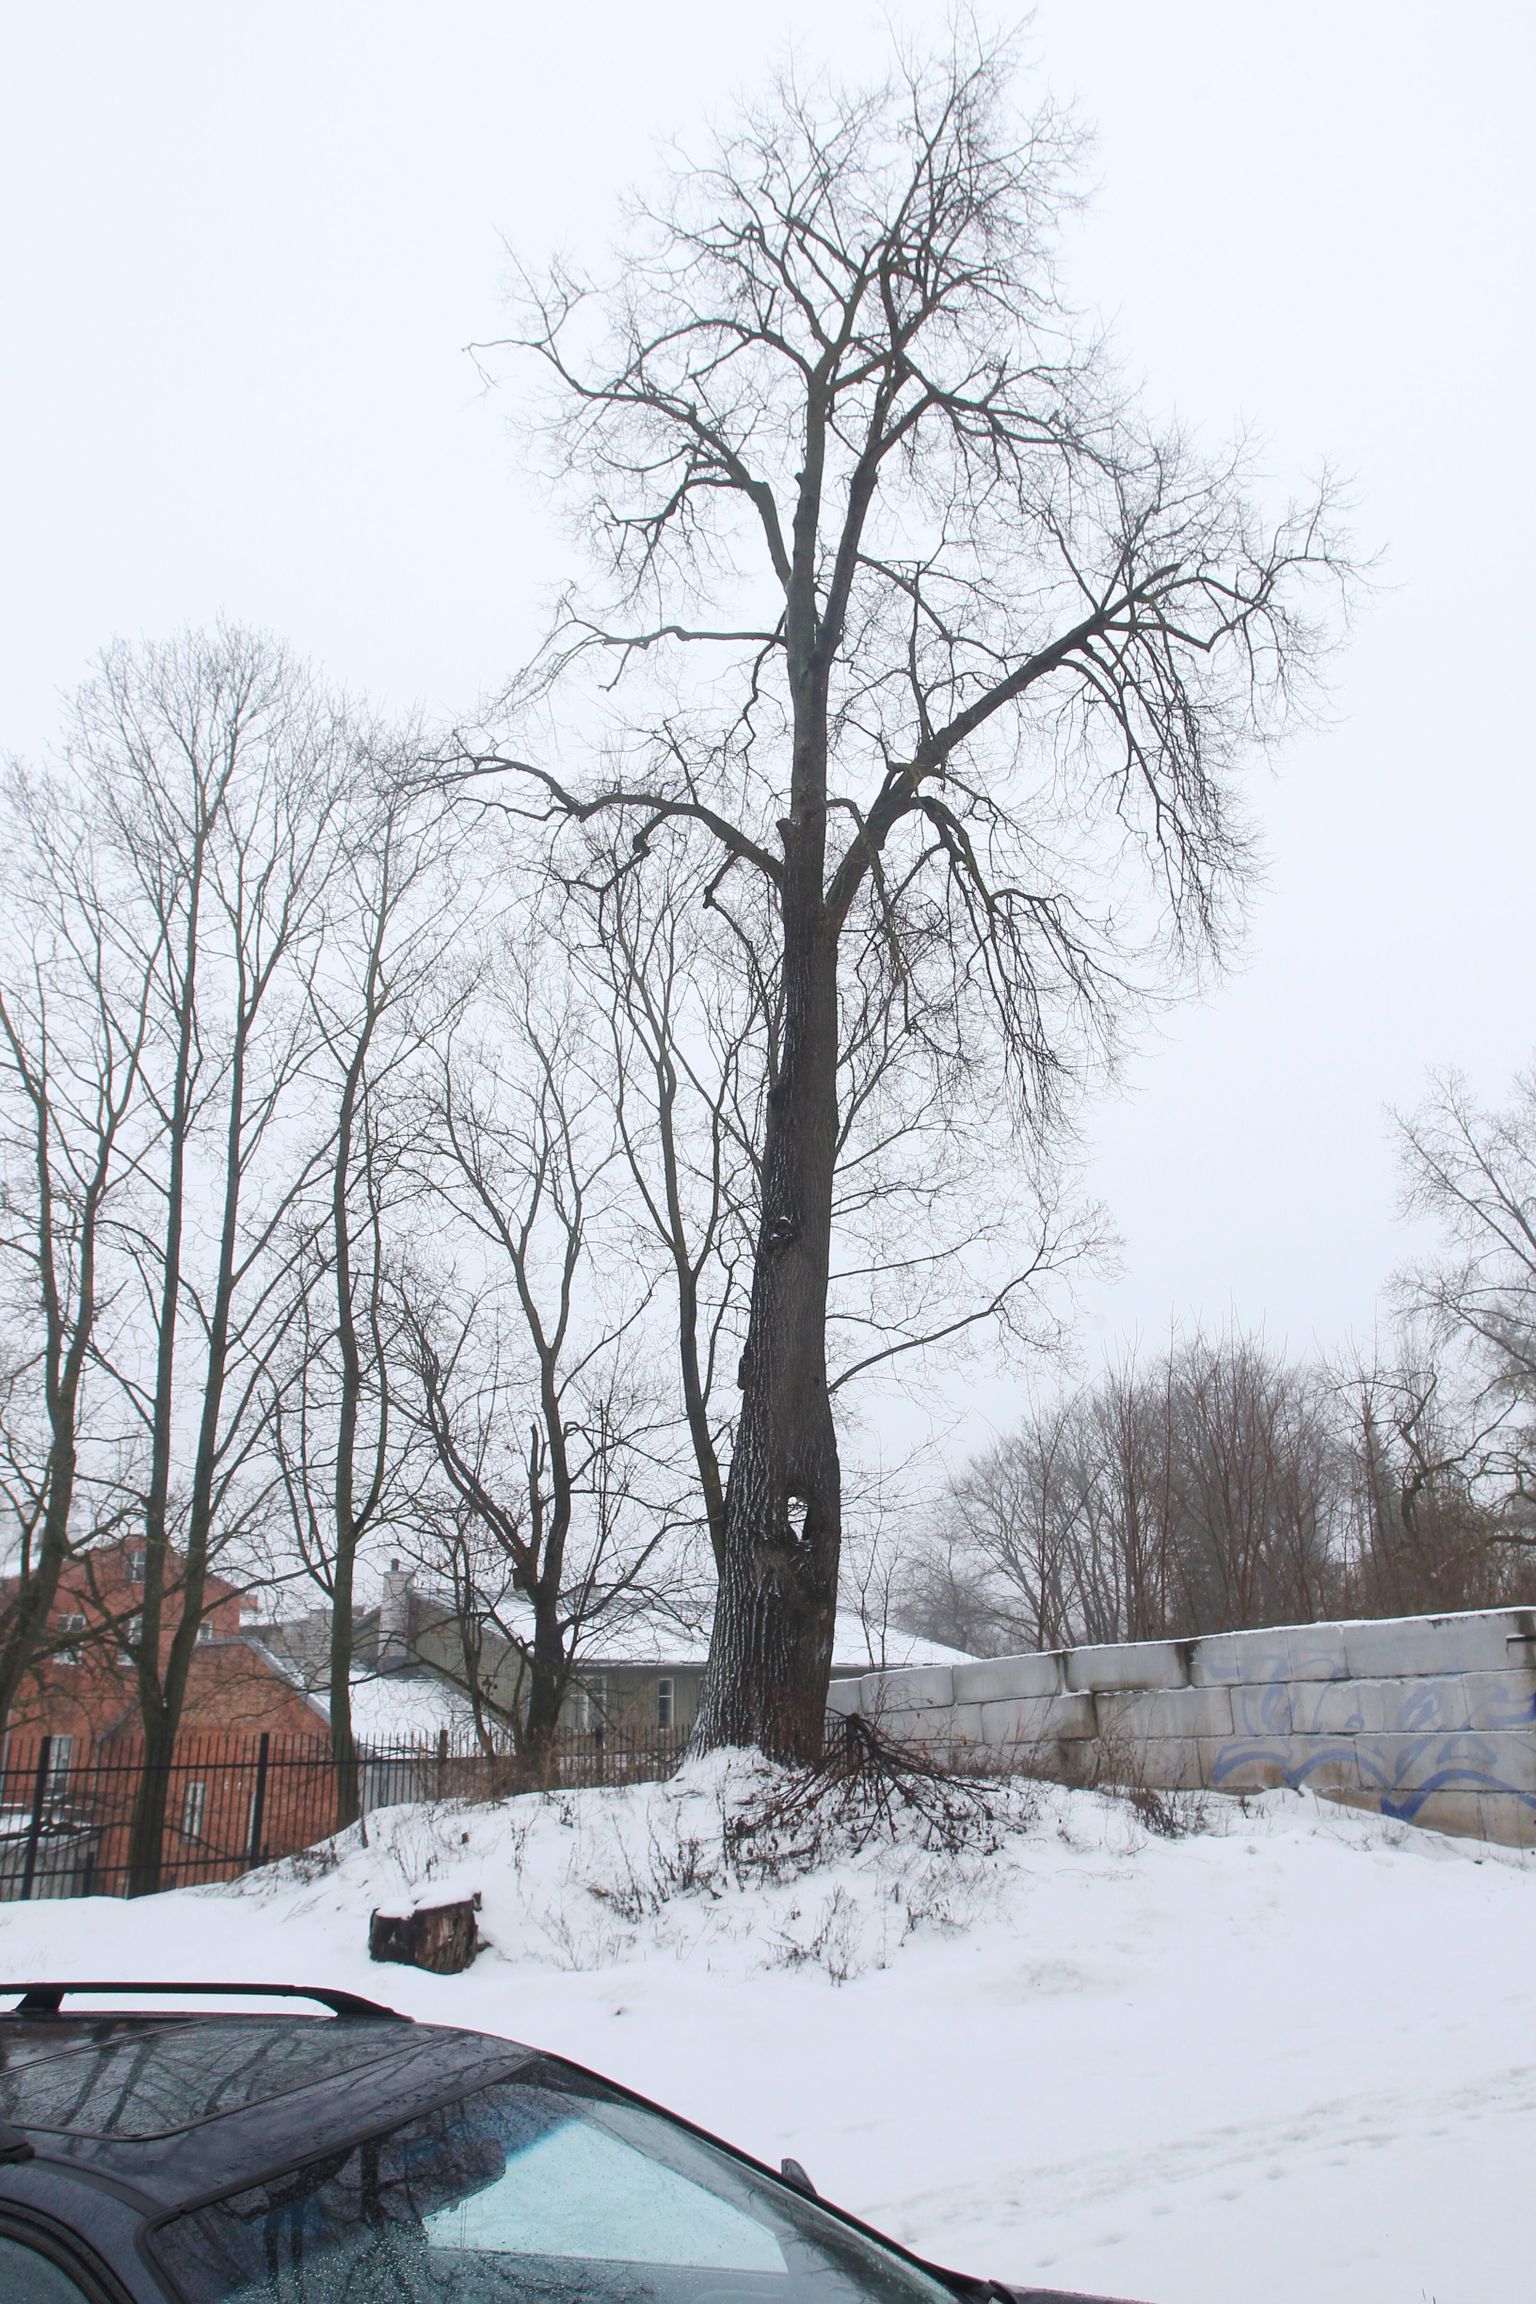 Tartus Lai 28 hoone lähedal kasvab iidne augulise tüvega pärn. Raik-Hiio Mikelsaare arvamuse kohaselt võis see puu anda inspiratsiooni Gustav Wulffile ööbikulaulu sõnade loomisel.